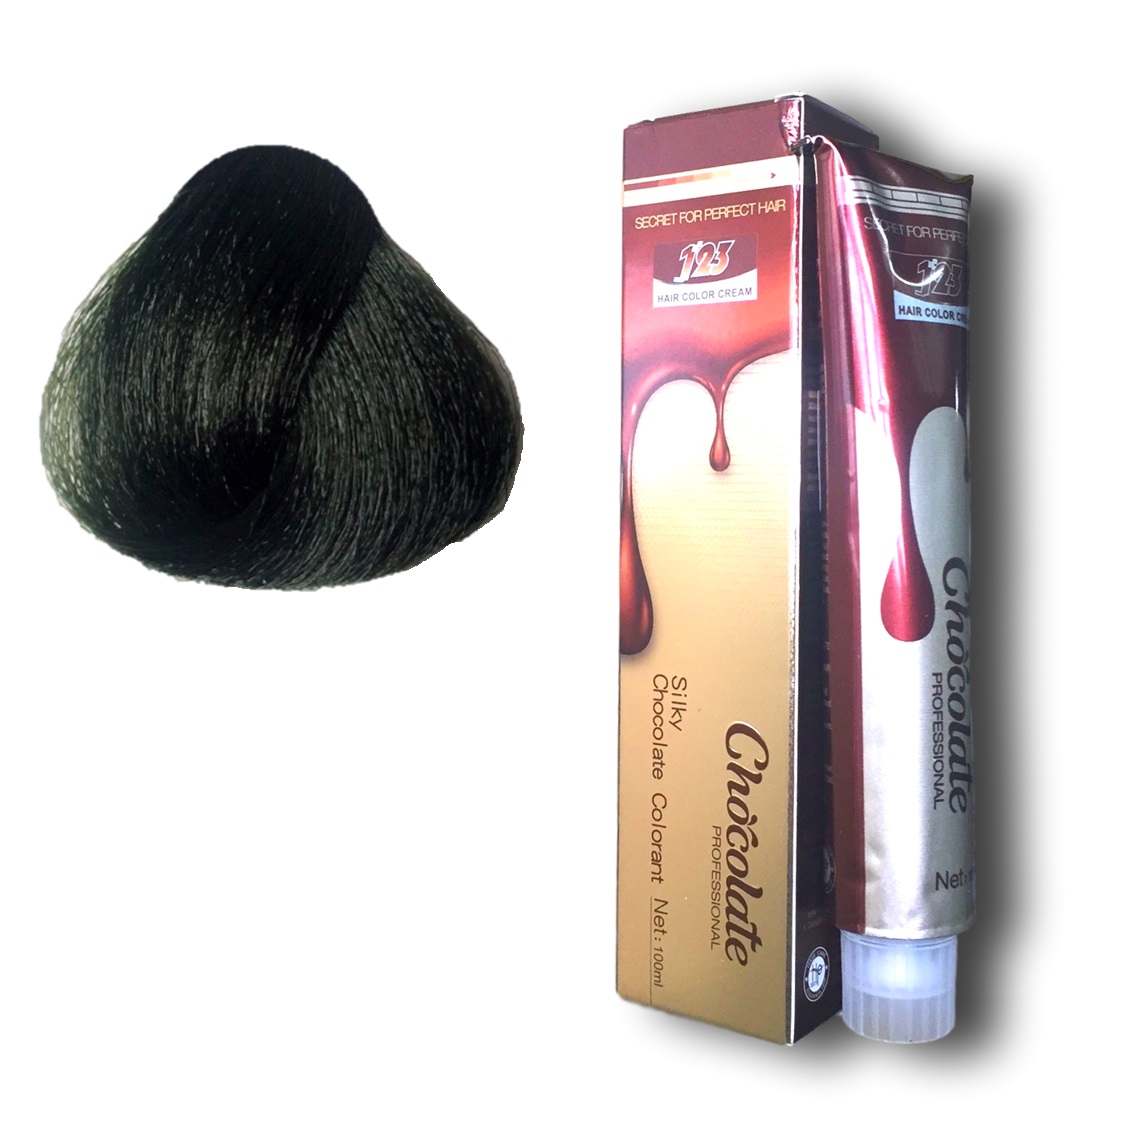 Thuốc nhuộm tóc màu nâu rêu 6.2 hương Socola 123 Chocolate Color Cream 100ml